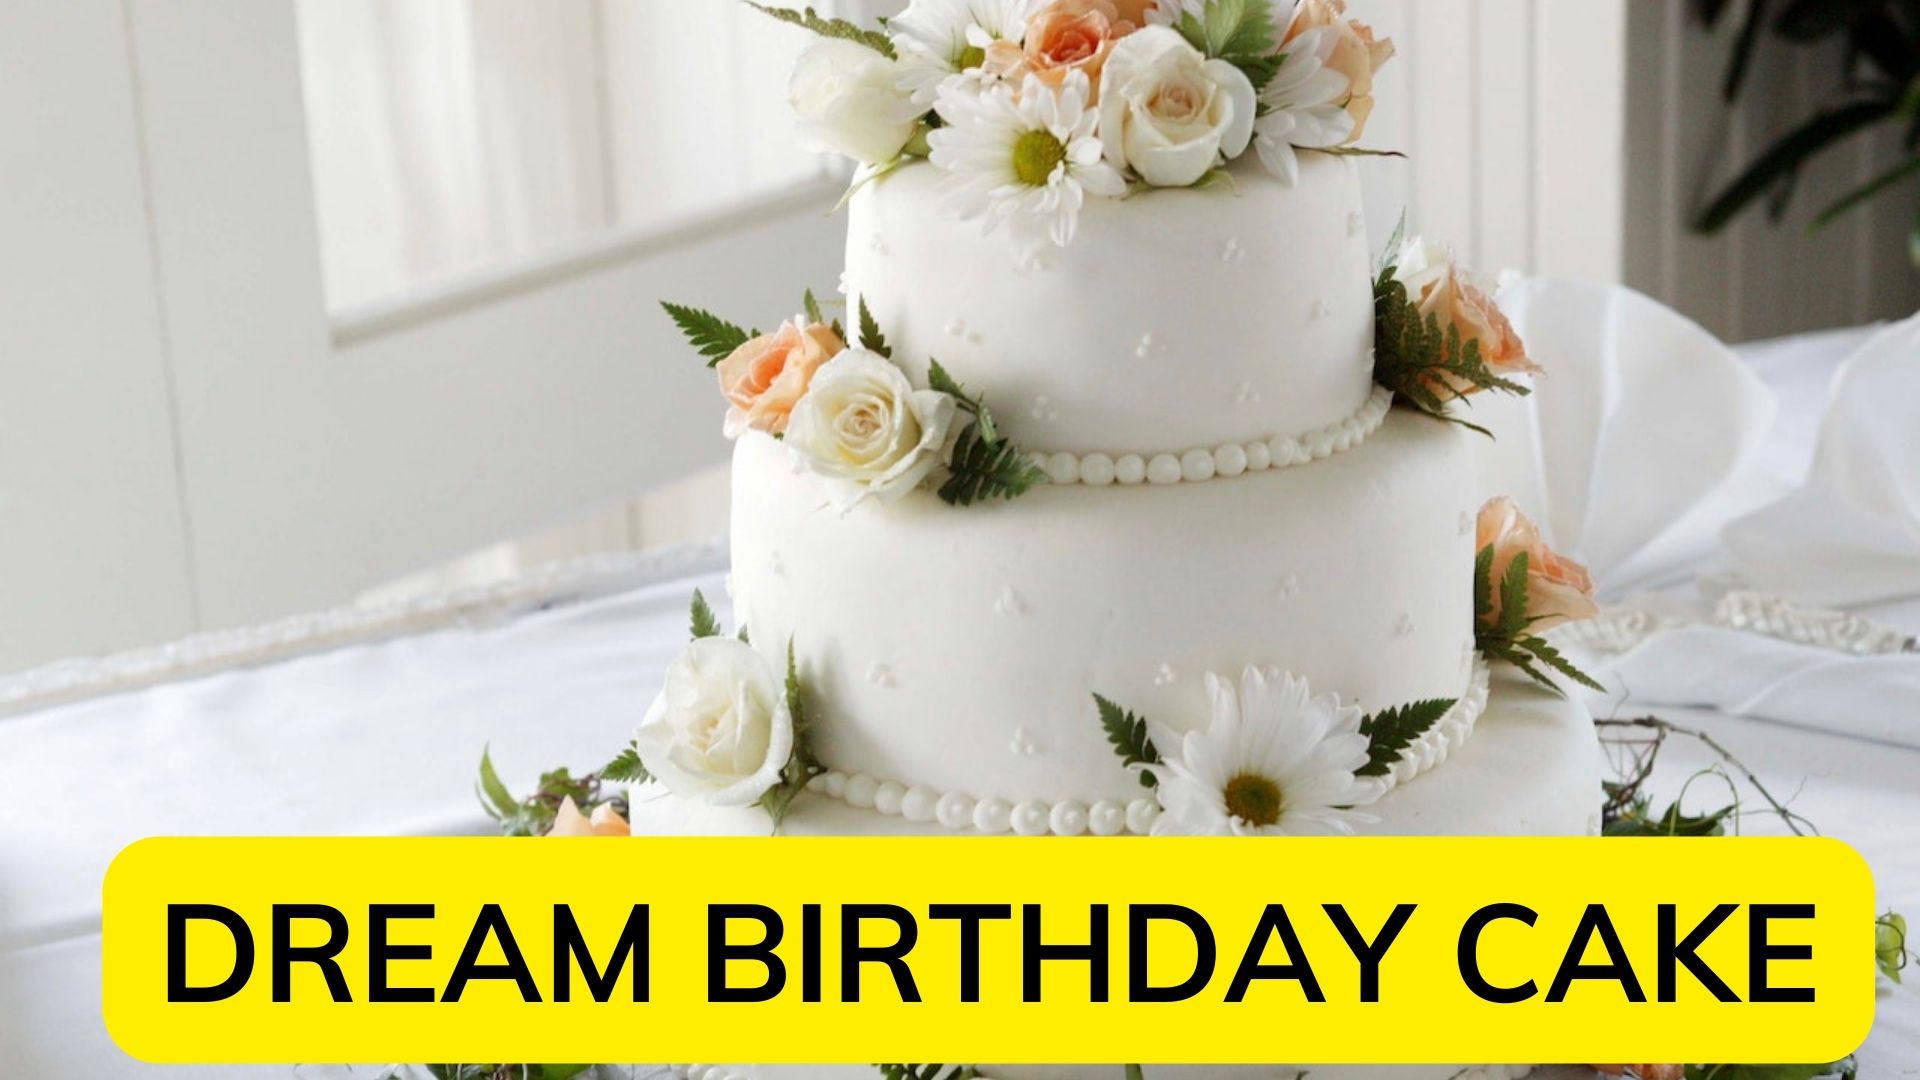 Dream Birthday Cake - Predicts Some Future Celebration